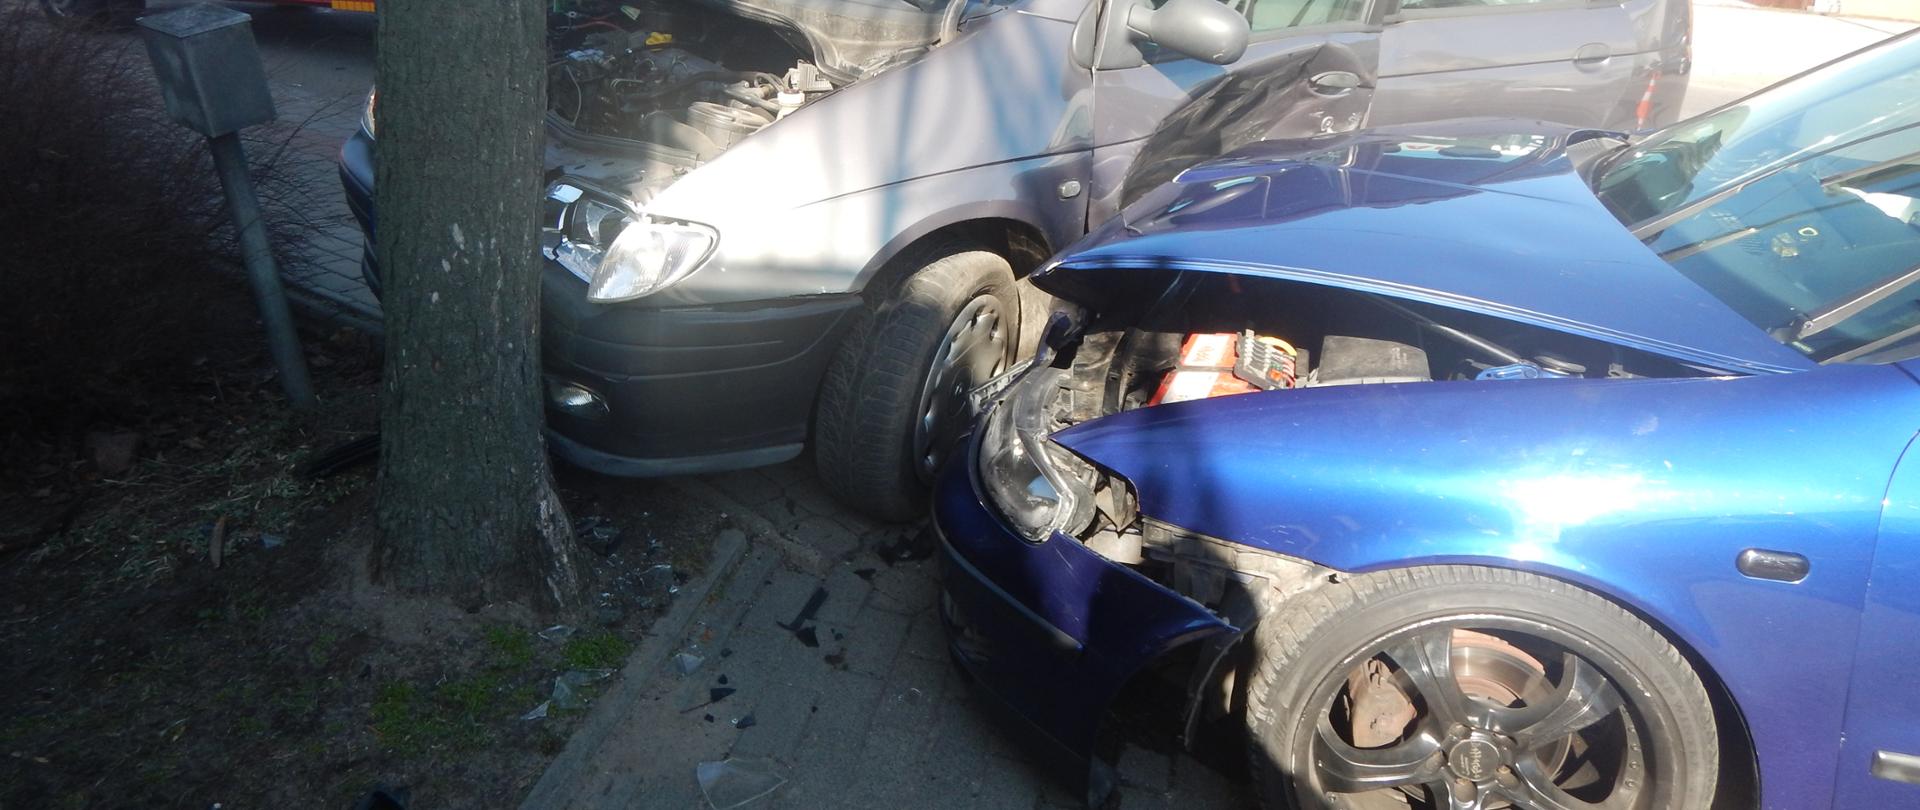 Zdjęcie przedstawia dwa uszkodzone samochody osobowe